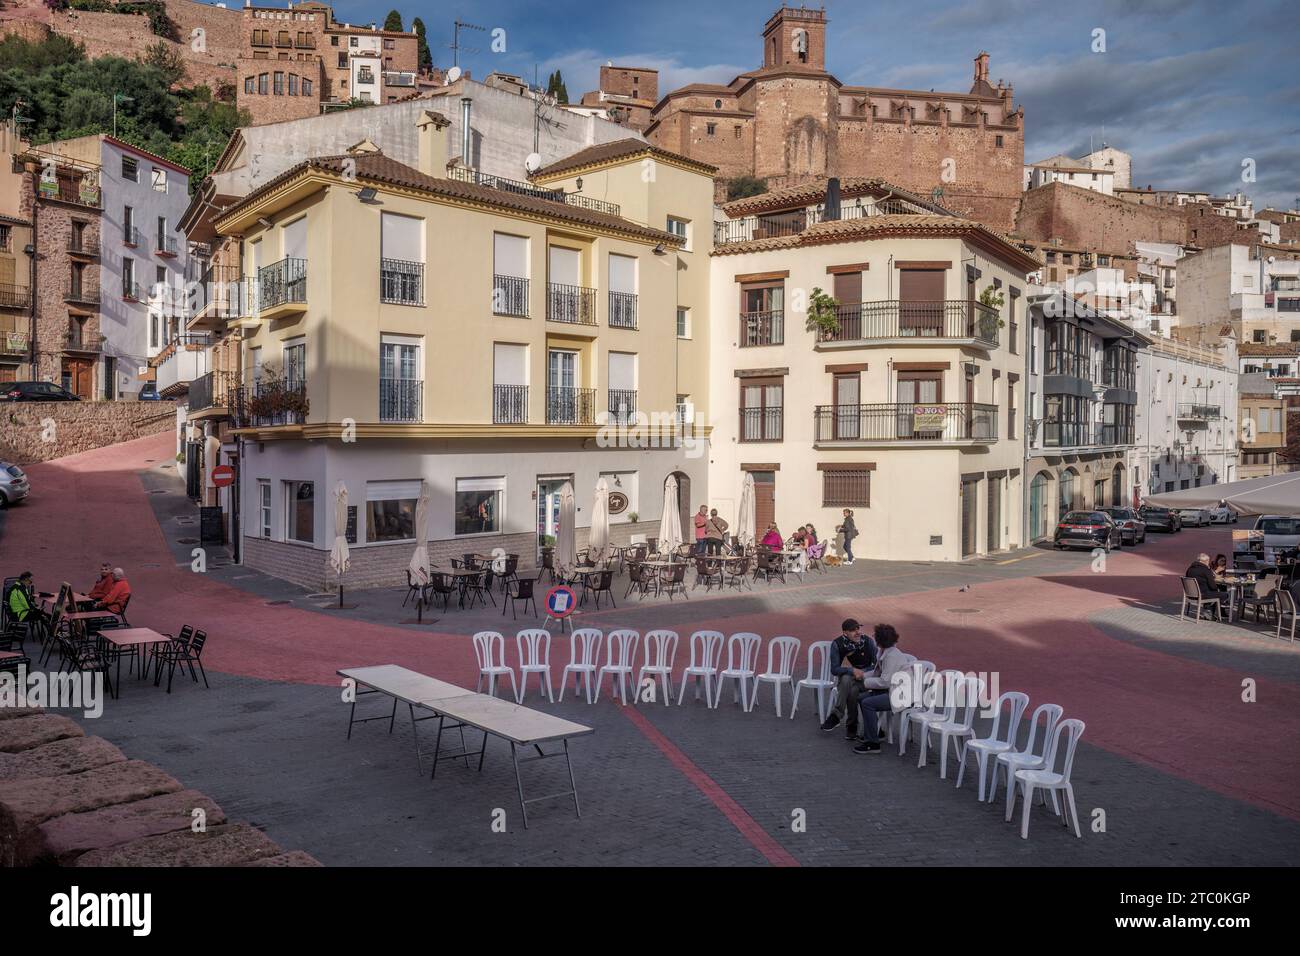 Coppia seduta su un palco con sedie bianche di fila che parla amichevole nella piazza della città di Villafames (Vilafames) provincia di Castellon, Spagna, Europa. Foto Stock